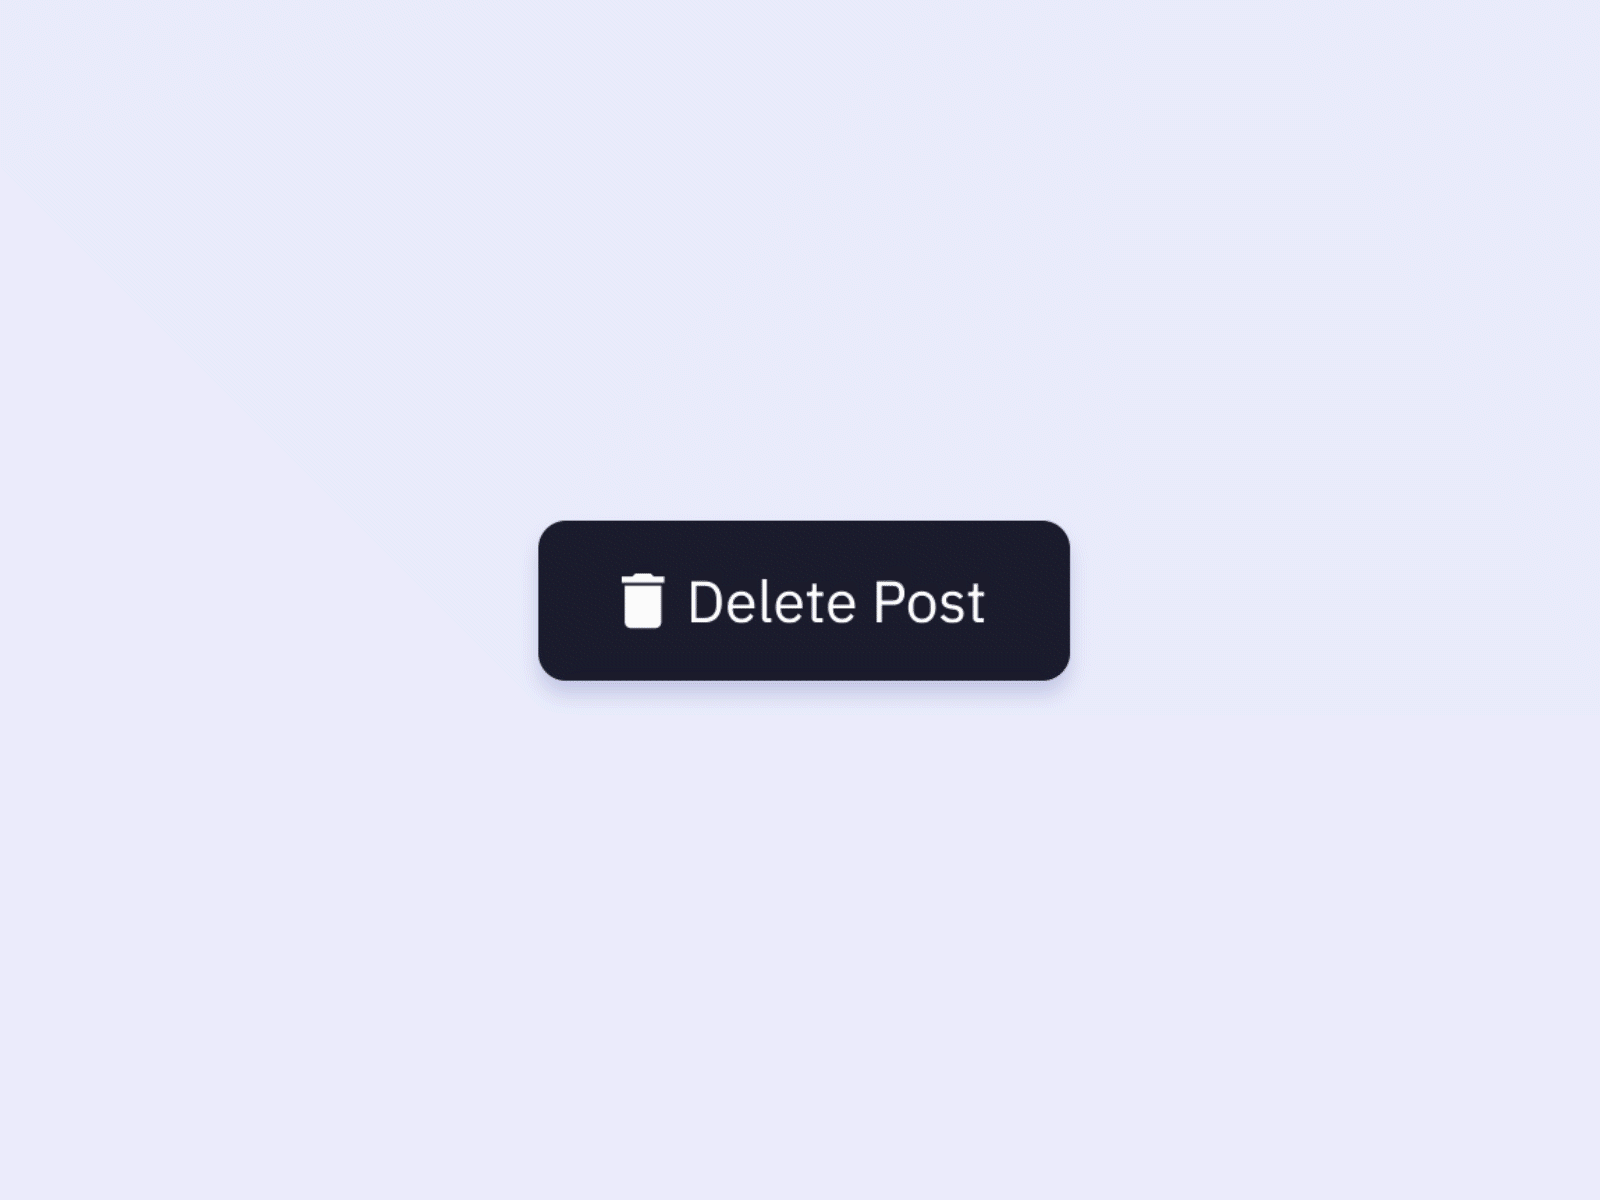 Delete Button - Micro interaction design